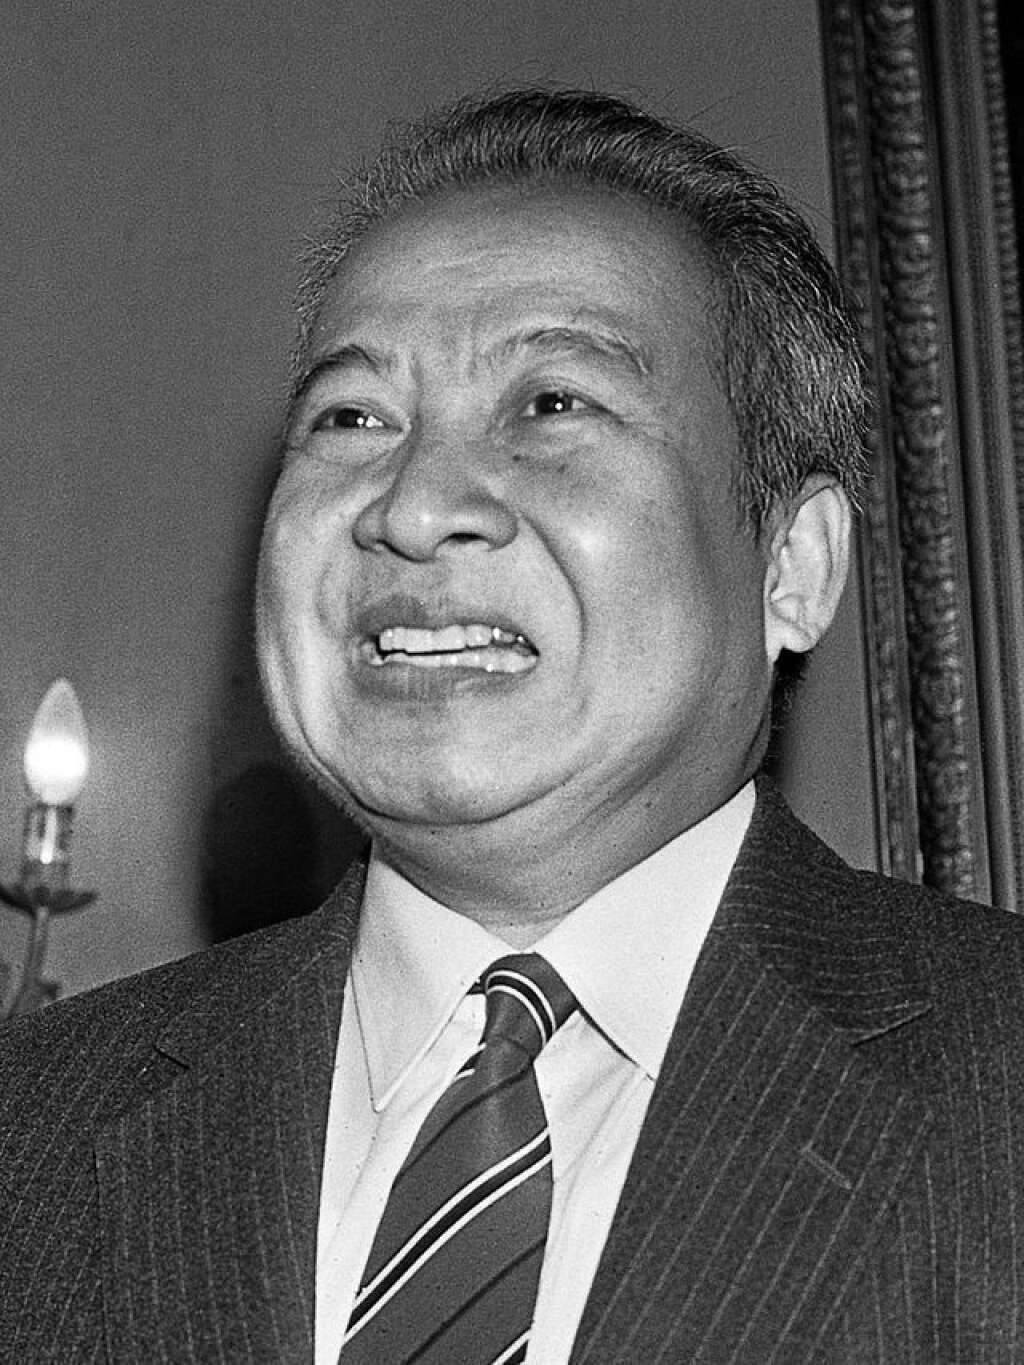 Norodom Sihanouk - Le roi du Cambodge Norodom Sihanouk, 81 ans, renonce à la couronne le 7 octobre 2004 alors qu'il est soigné depuis quelques mois à Pékin pour un cancer. Le Conseil du trône choisit comme successeur, un de ses fils, le prince Norodom Sihamoni. Monté une première fois sur le trône en 1941, Sihanouk avait déjà abdiqué en 1955 en faveur de son père, avant de redevenir monarque constitutionnel en 1993.